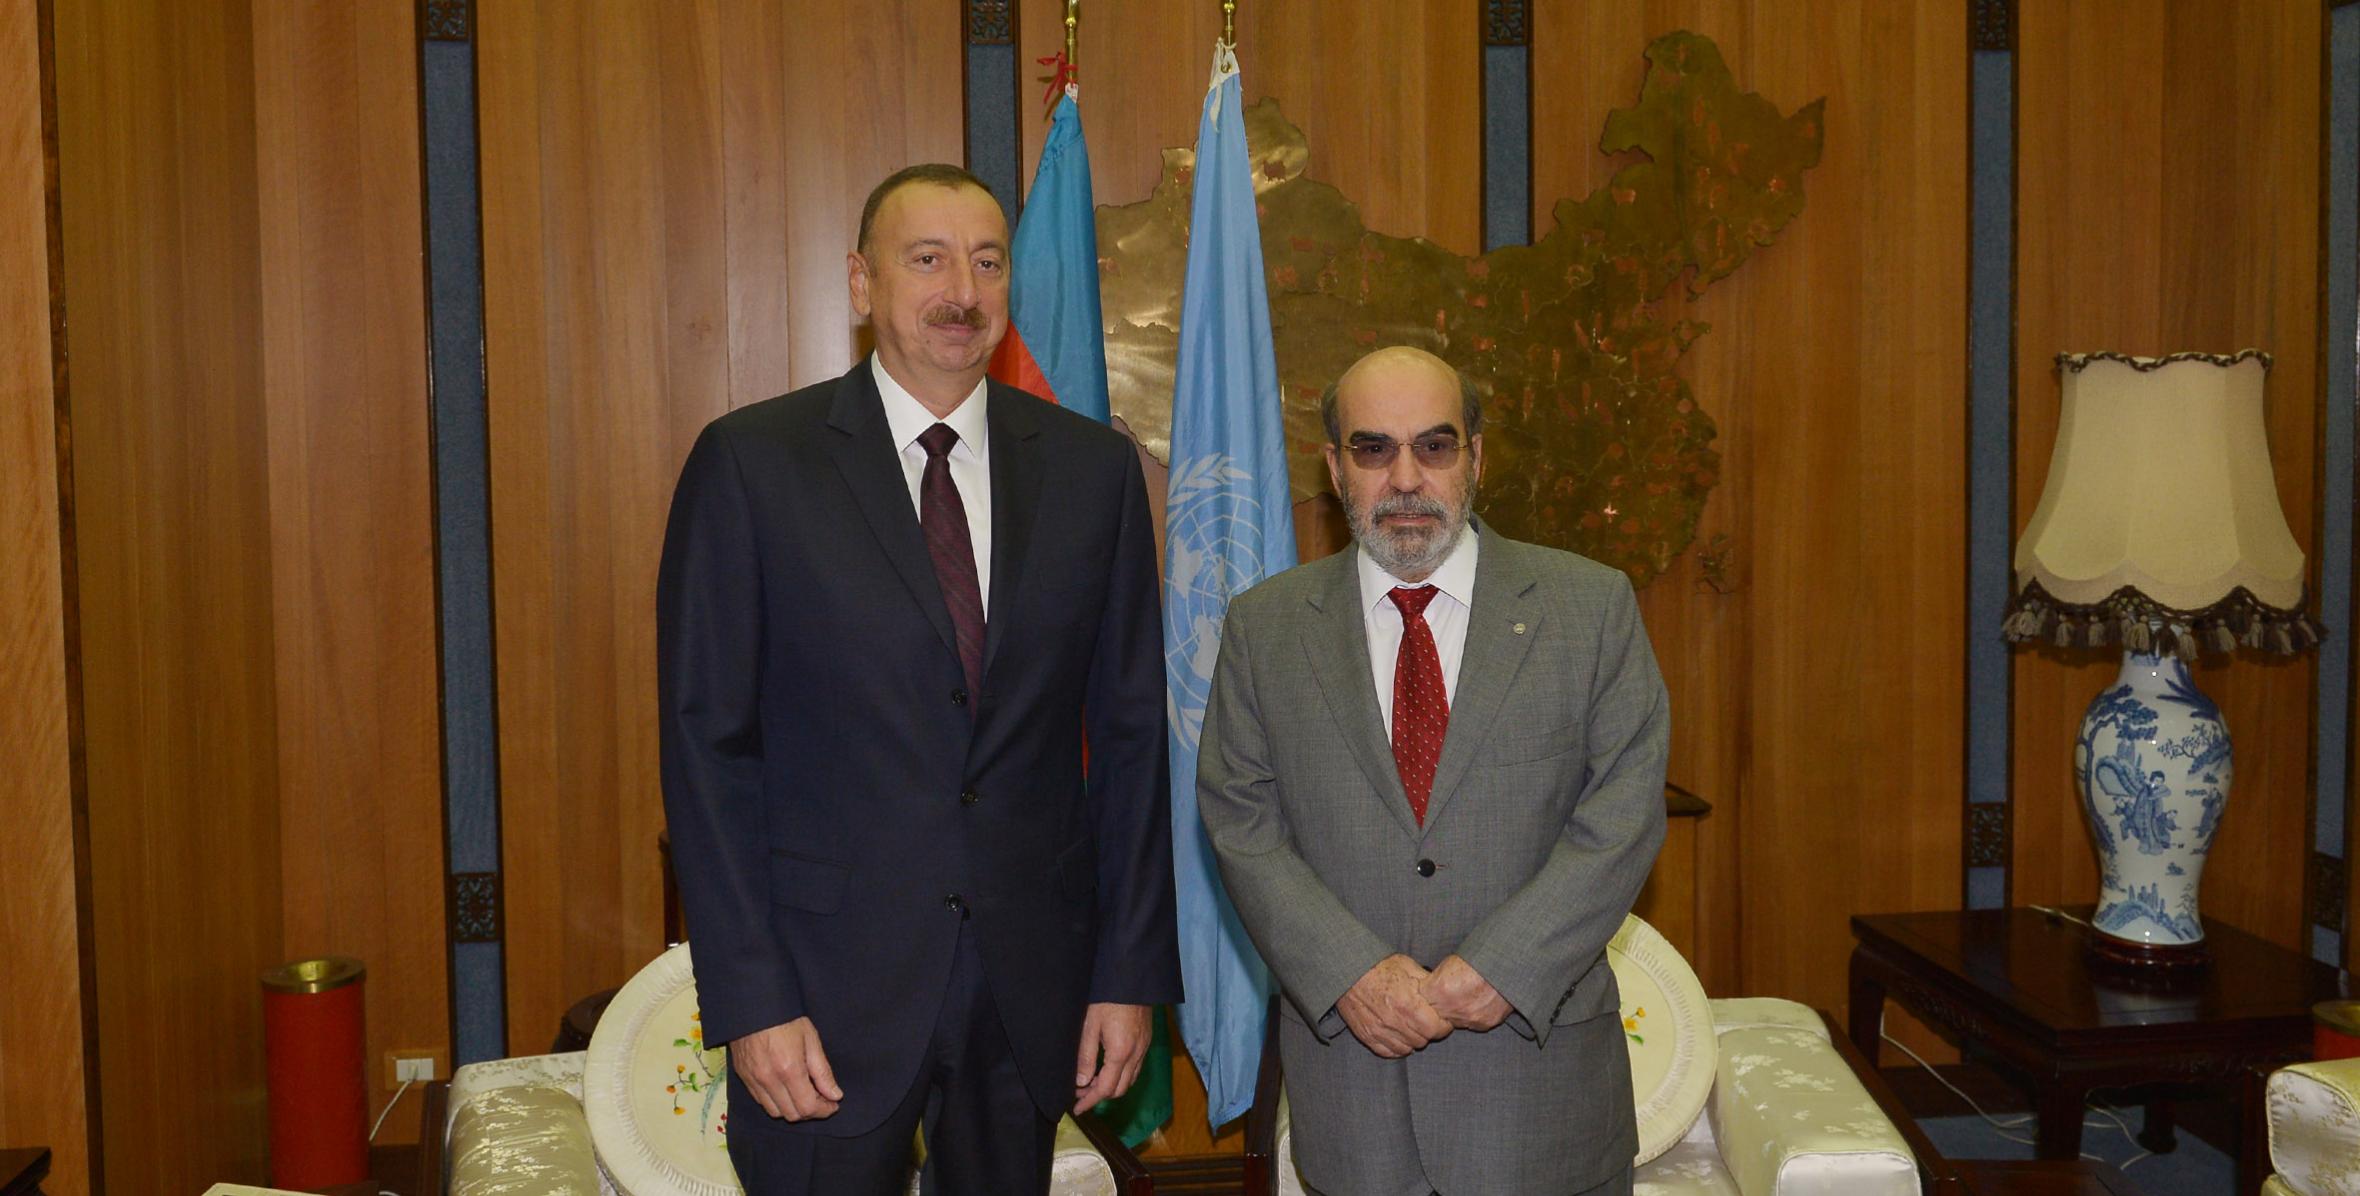 Ilham Aliyev met with FAO Director-General Jose Graziano da Silva in Rome